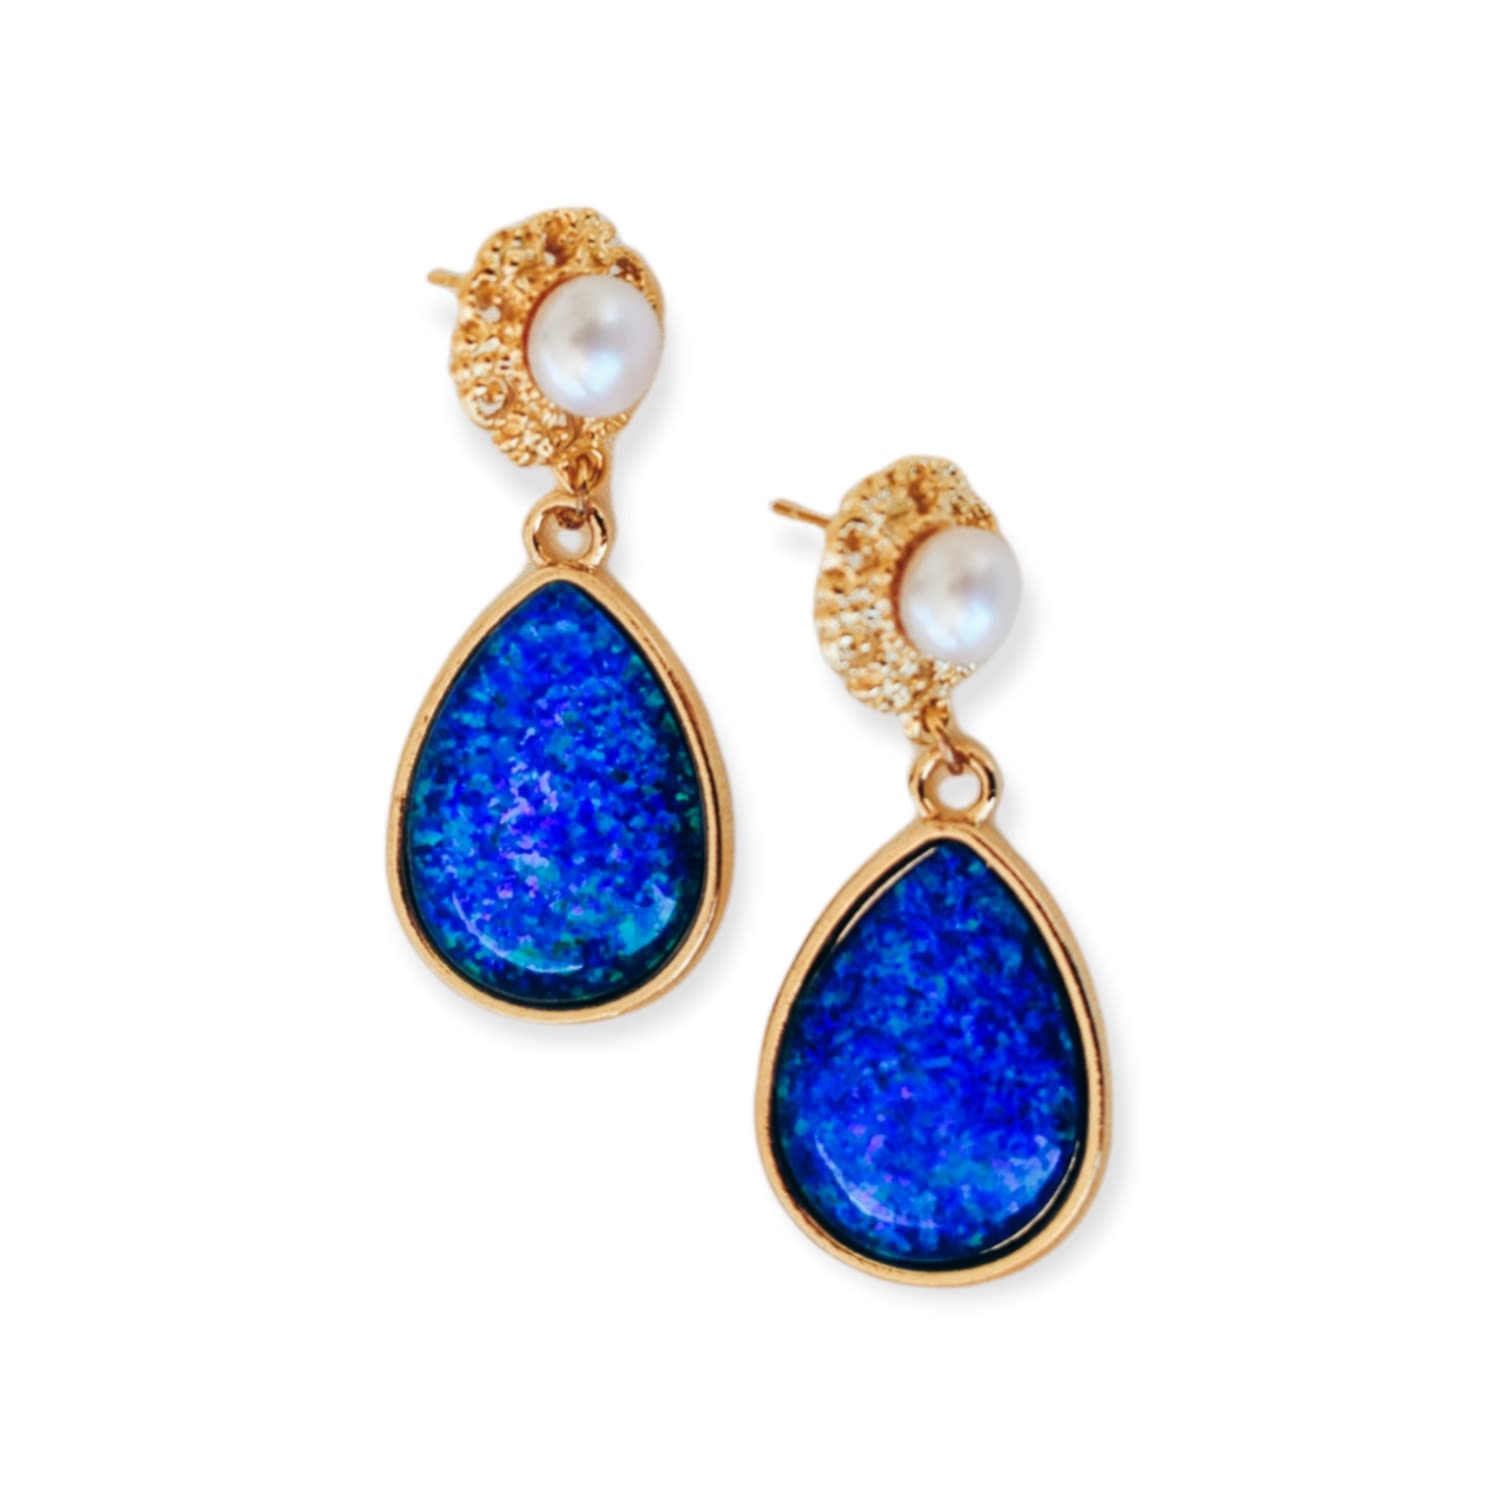 Women's Gold / Blue / White Eloquence Statement Freshwater Pearl & Teardrop Blue Opal Earrings EUNOIA Jewels